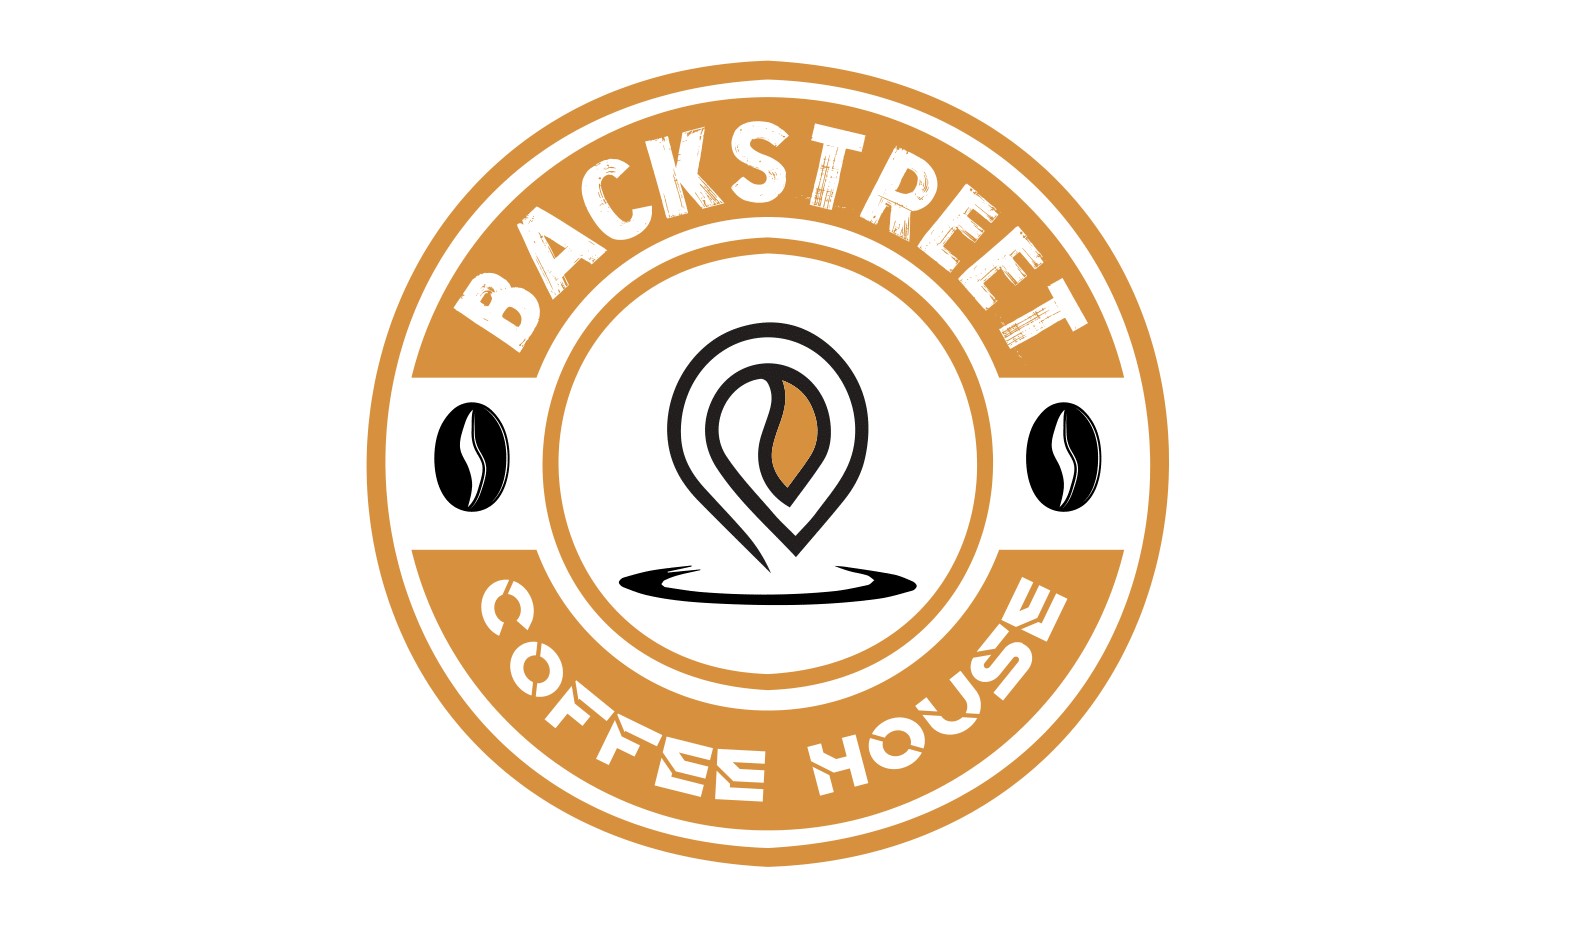 Backstreet Coffee House